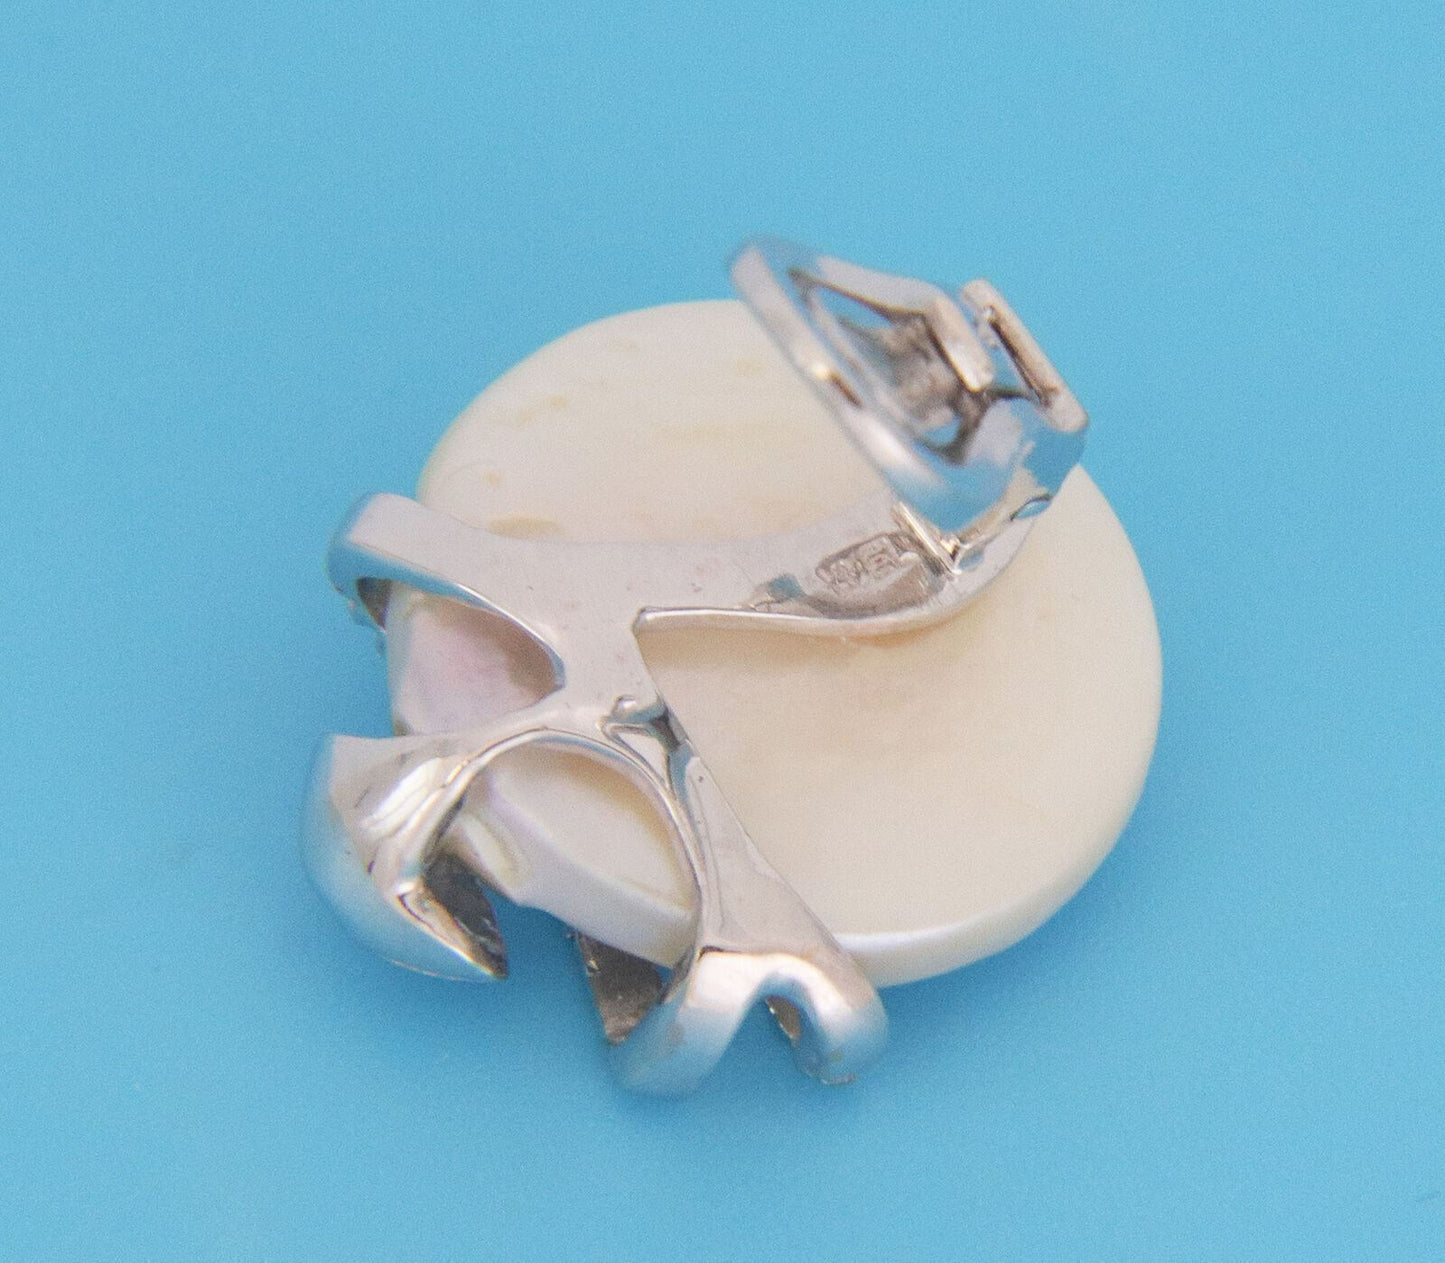 Yvel Diamond Mother of Pearl 18k White Gold Snake Earrings